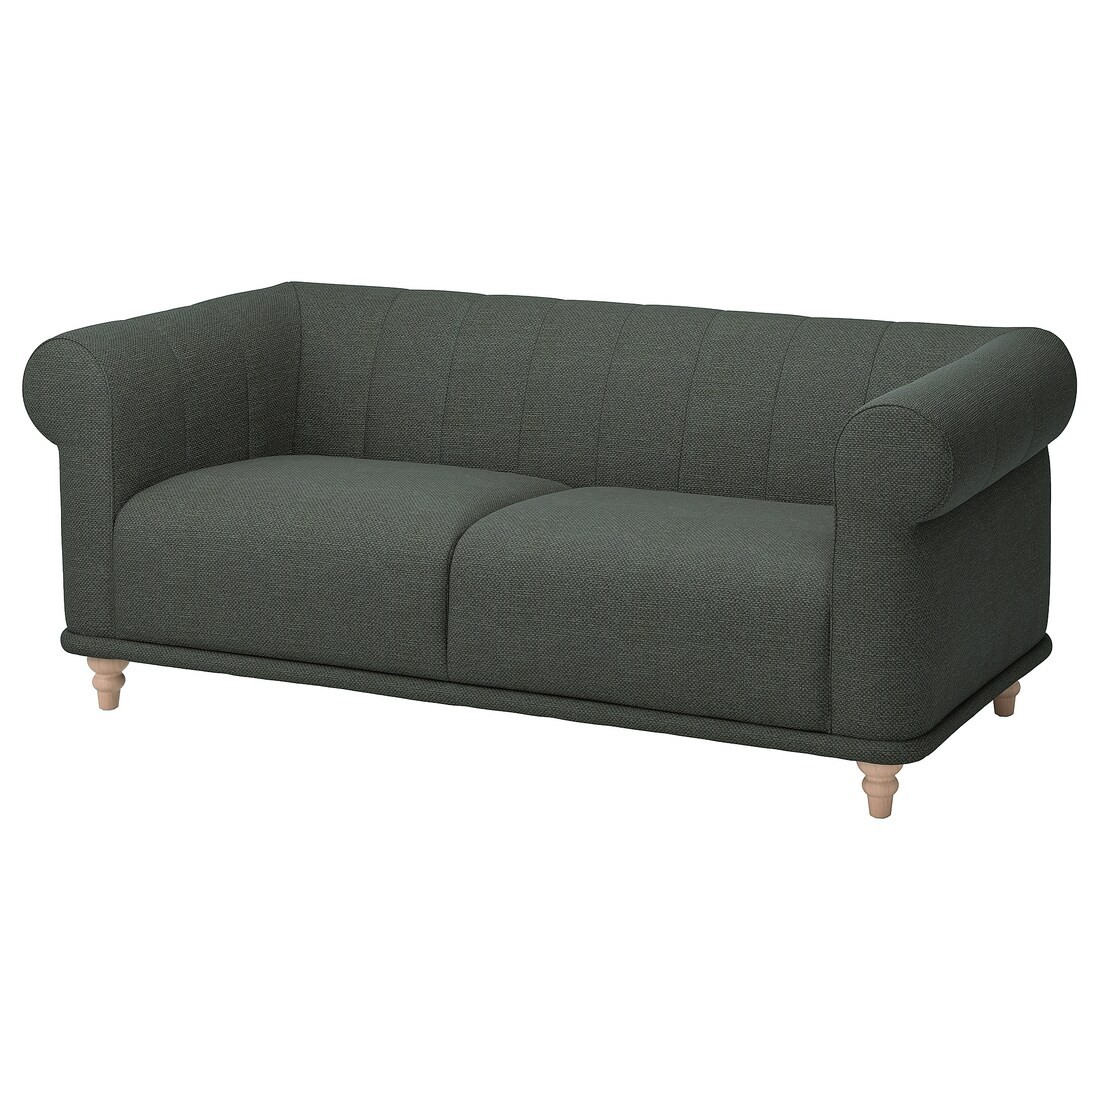 VISKAFORS ВИСКАФОРС 2-местный диван, Lejde / серый / зеленый береза